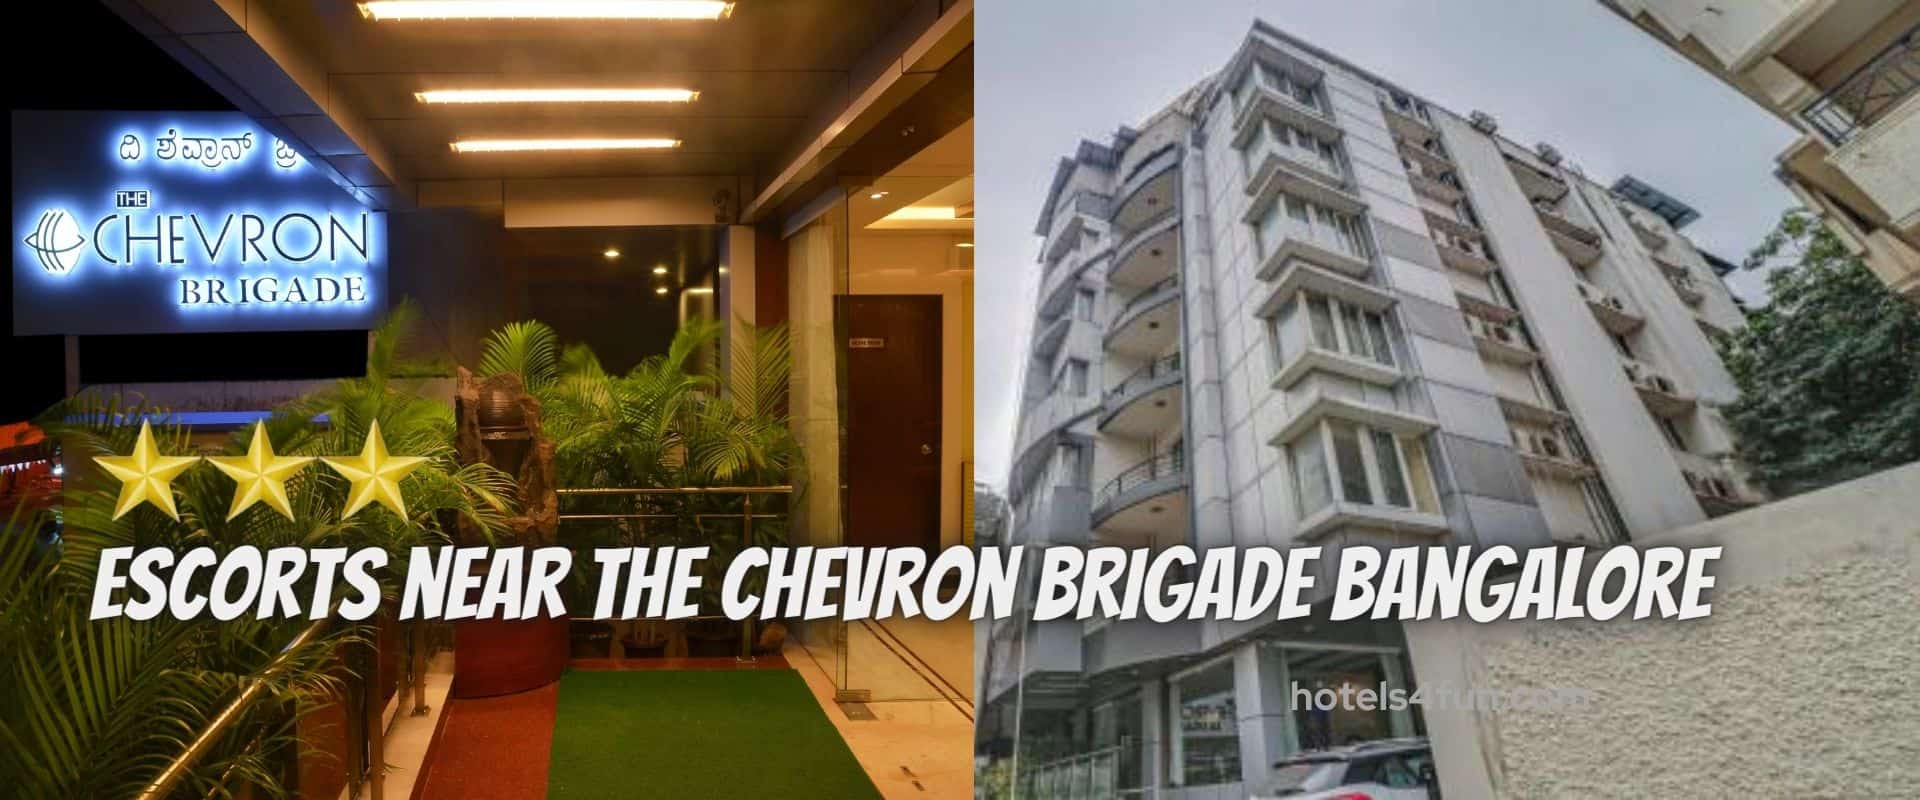 The Chevron Brigade Hotel Bangalore